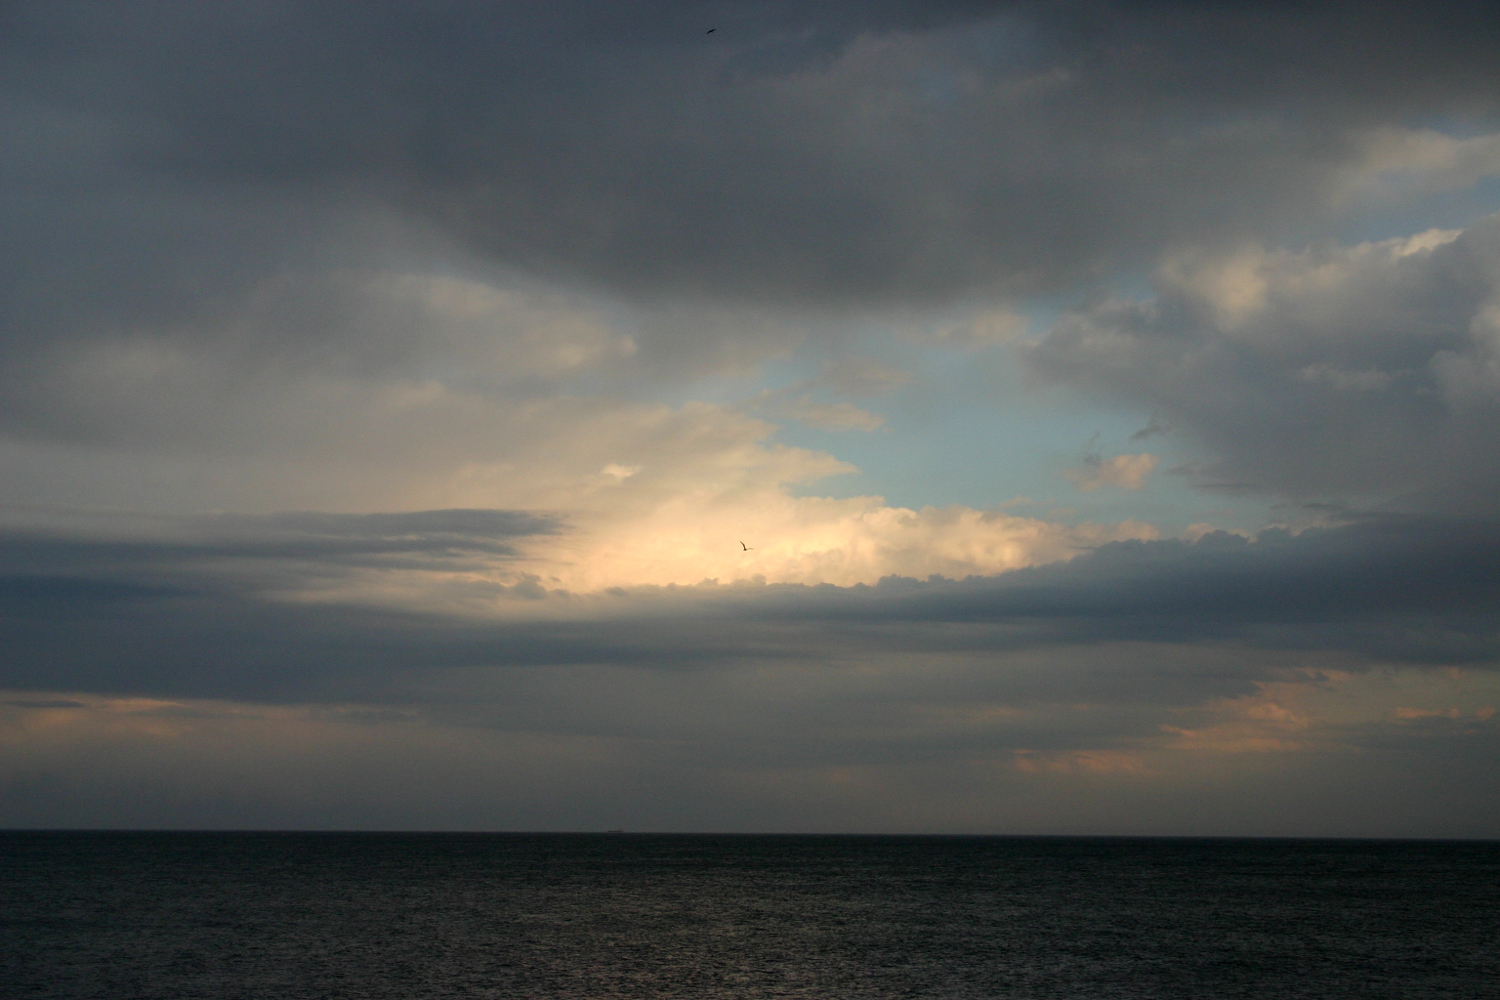 The Black Sea - dark clouds